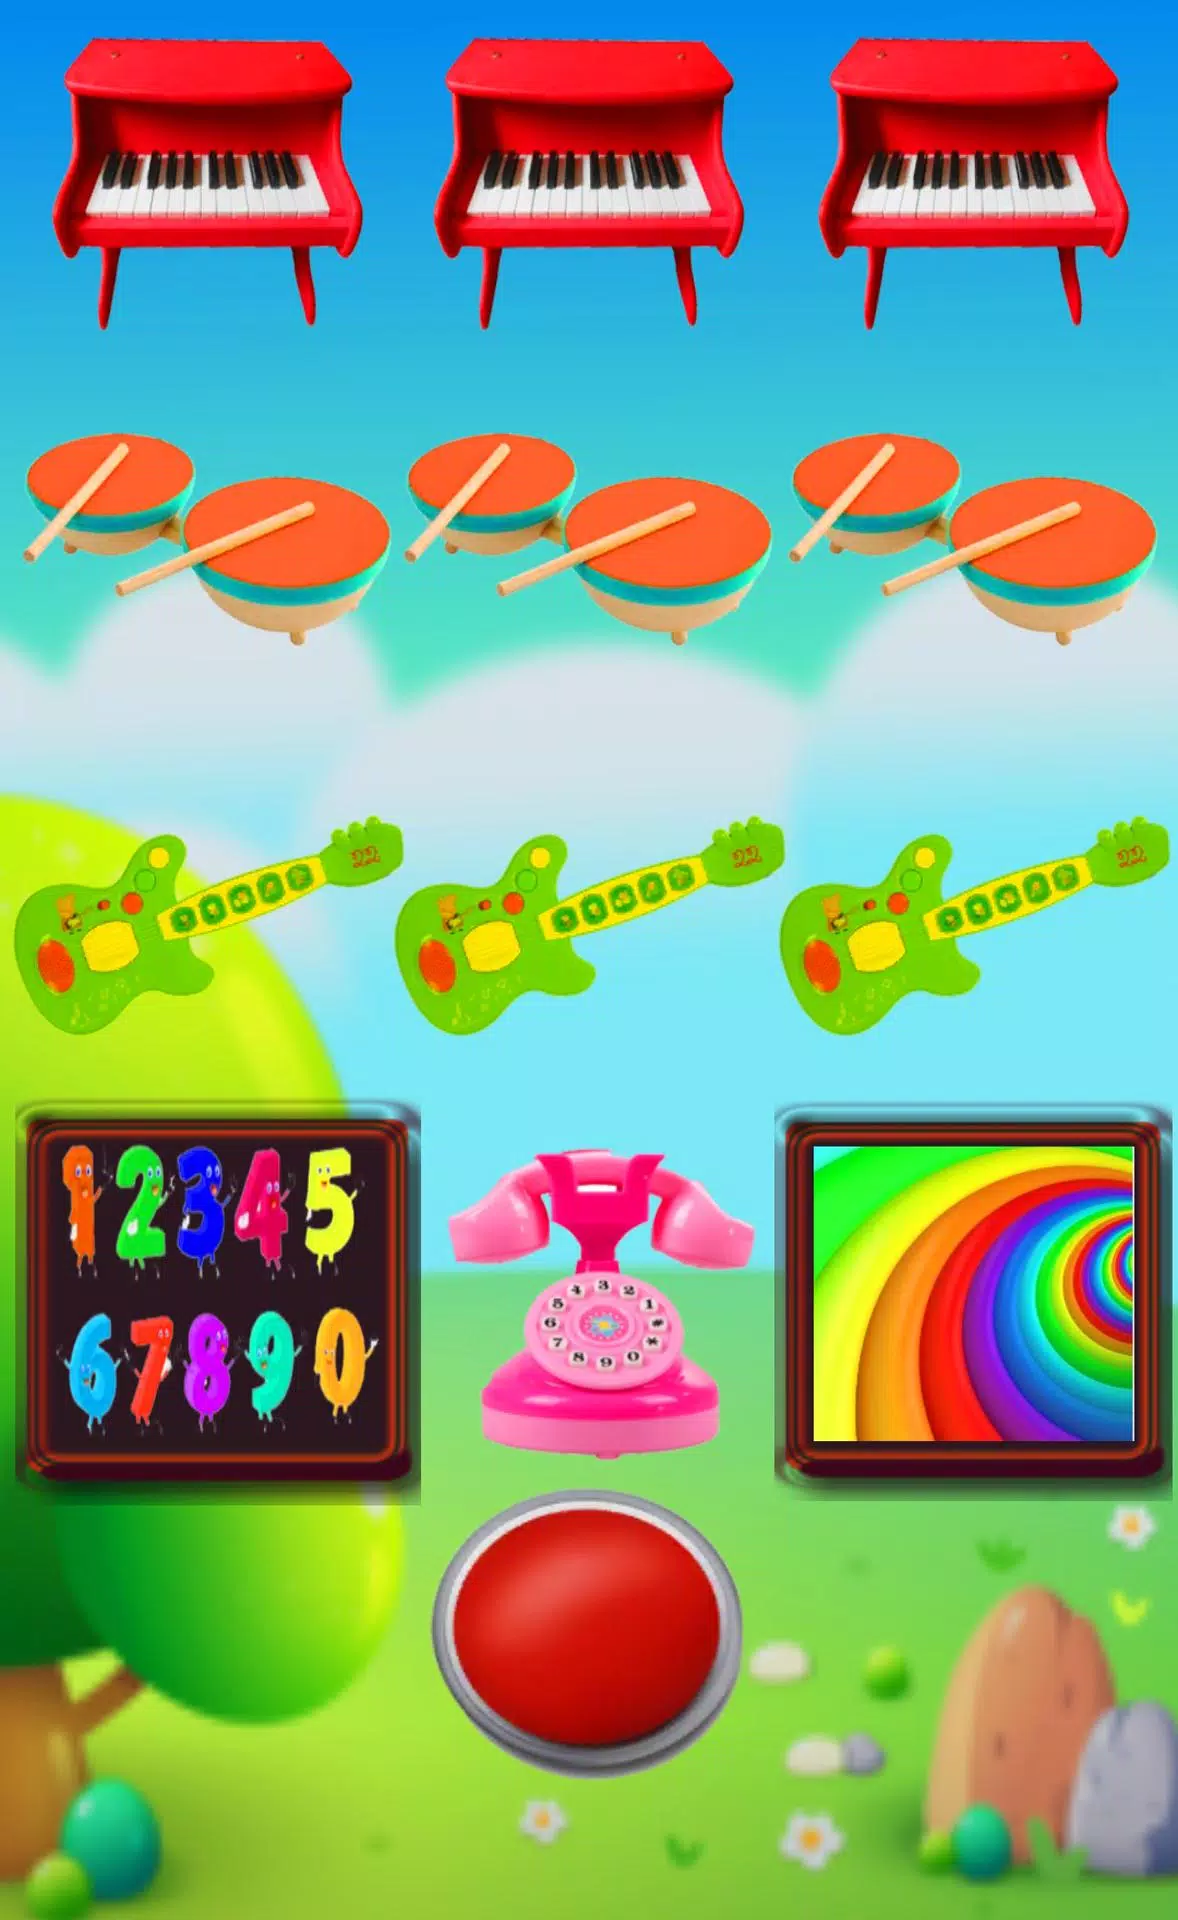 الوان, حيوانات , لعب اطفال : العاب اطفال Toys for Android - APK Download